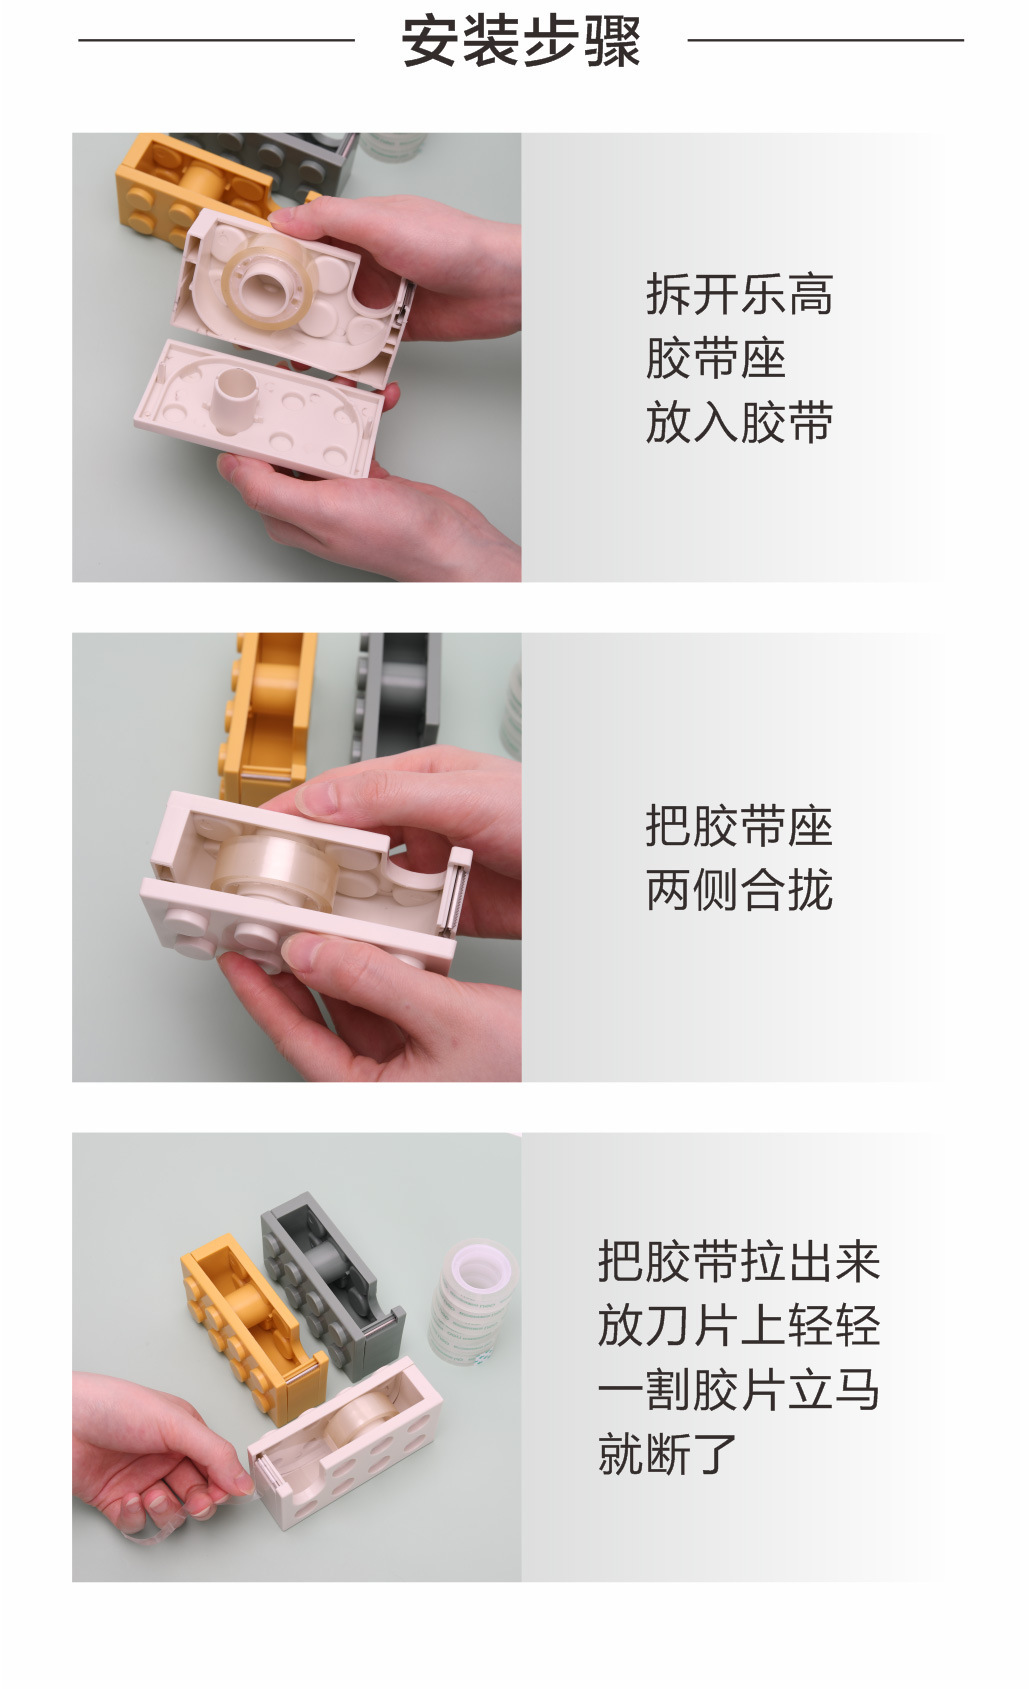 積木造型膠帶台 創意透明膠帶切割器 創意造型紙膠帶切割器7